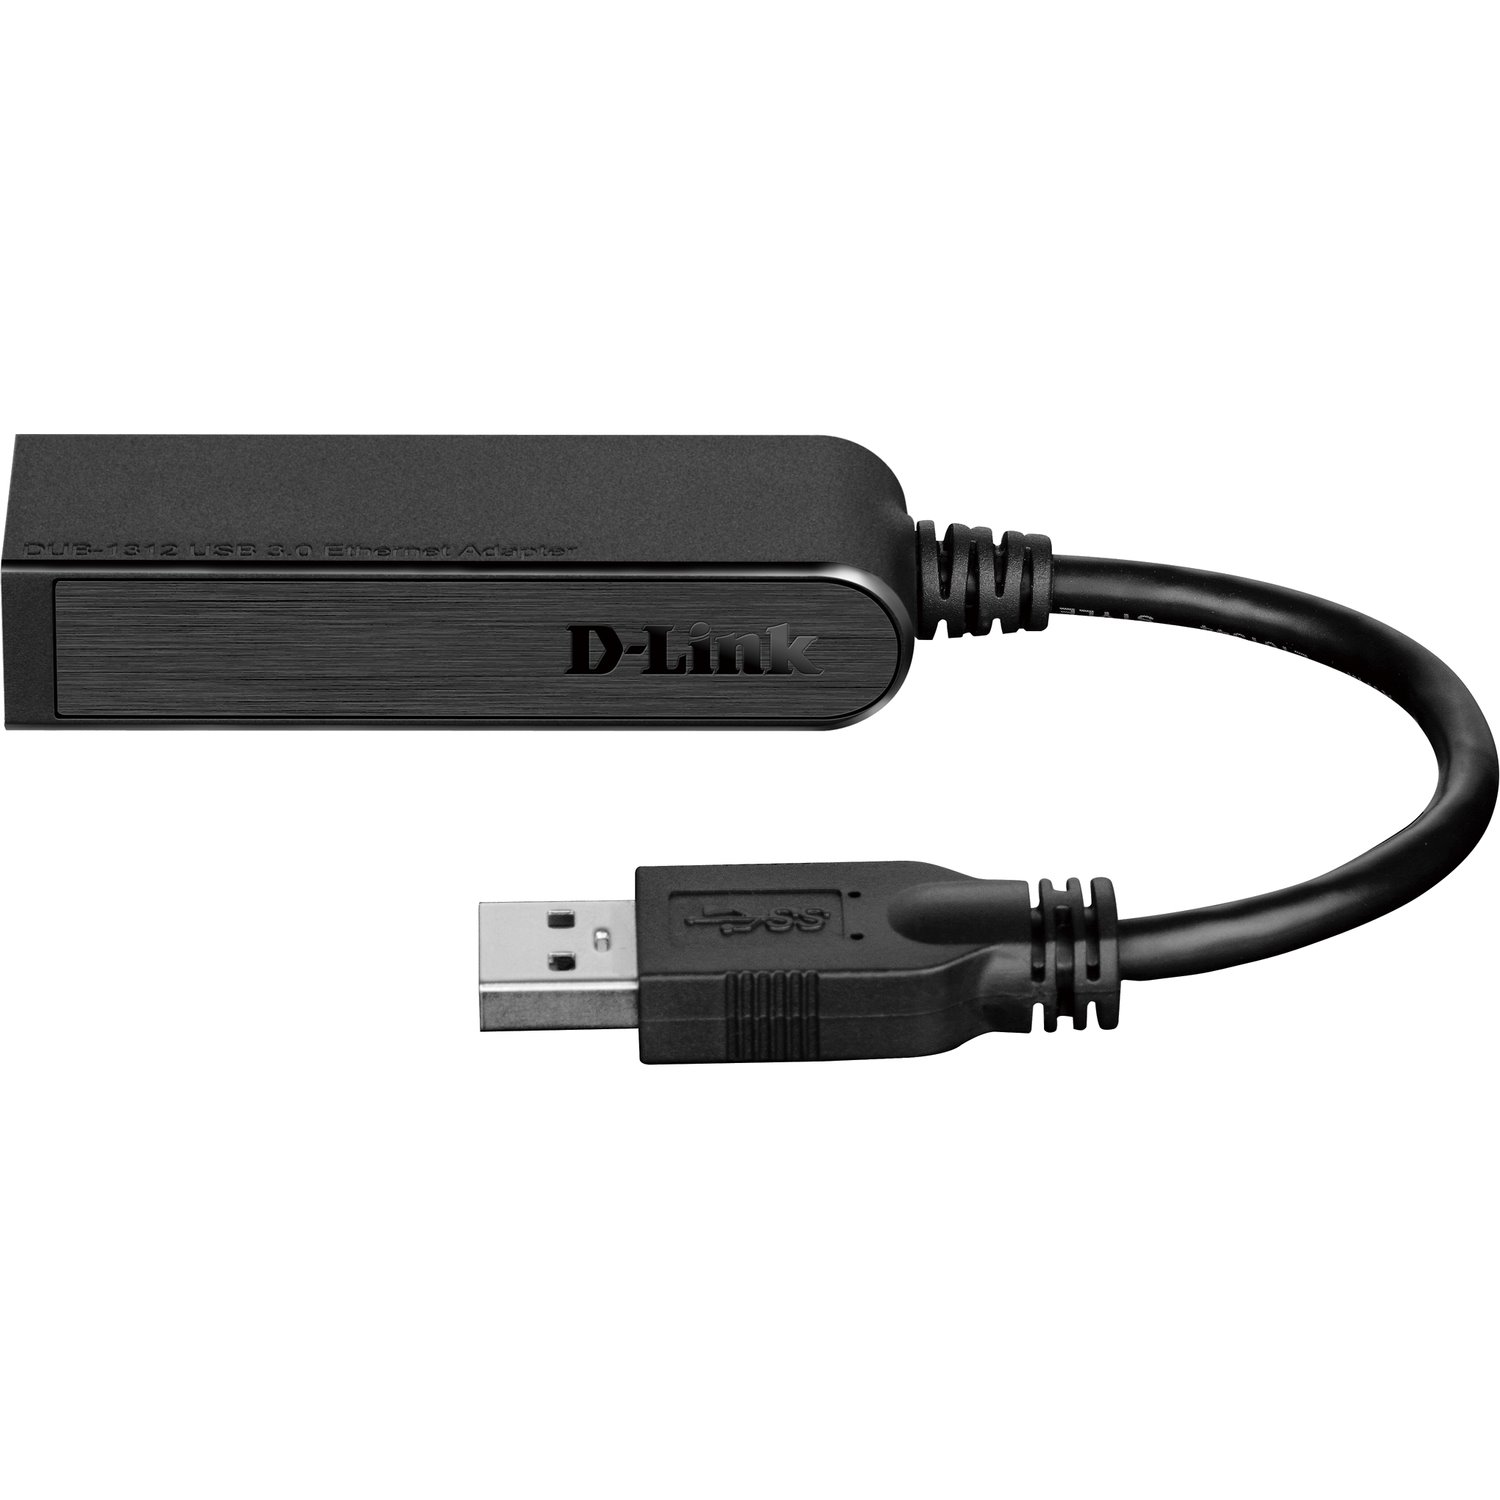 D-Link DUB-1312 Gigabit Ethernet Card - 10/100/1000Base-T - Desktop